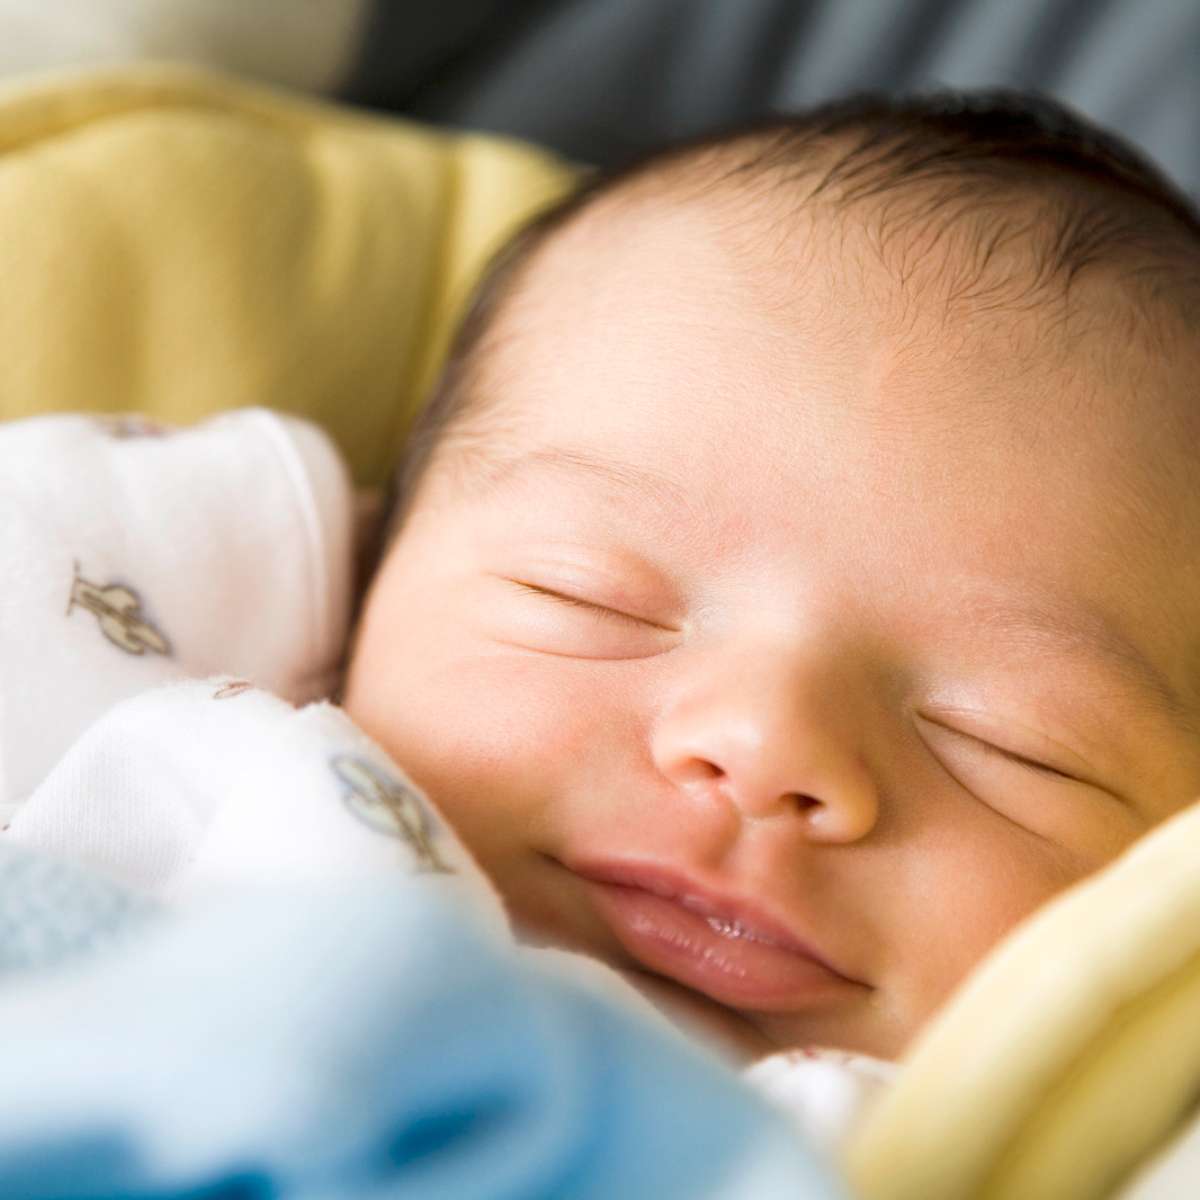 Por que bebês recém-nascidos sorriem enquanto dormem?